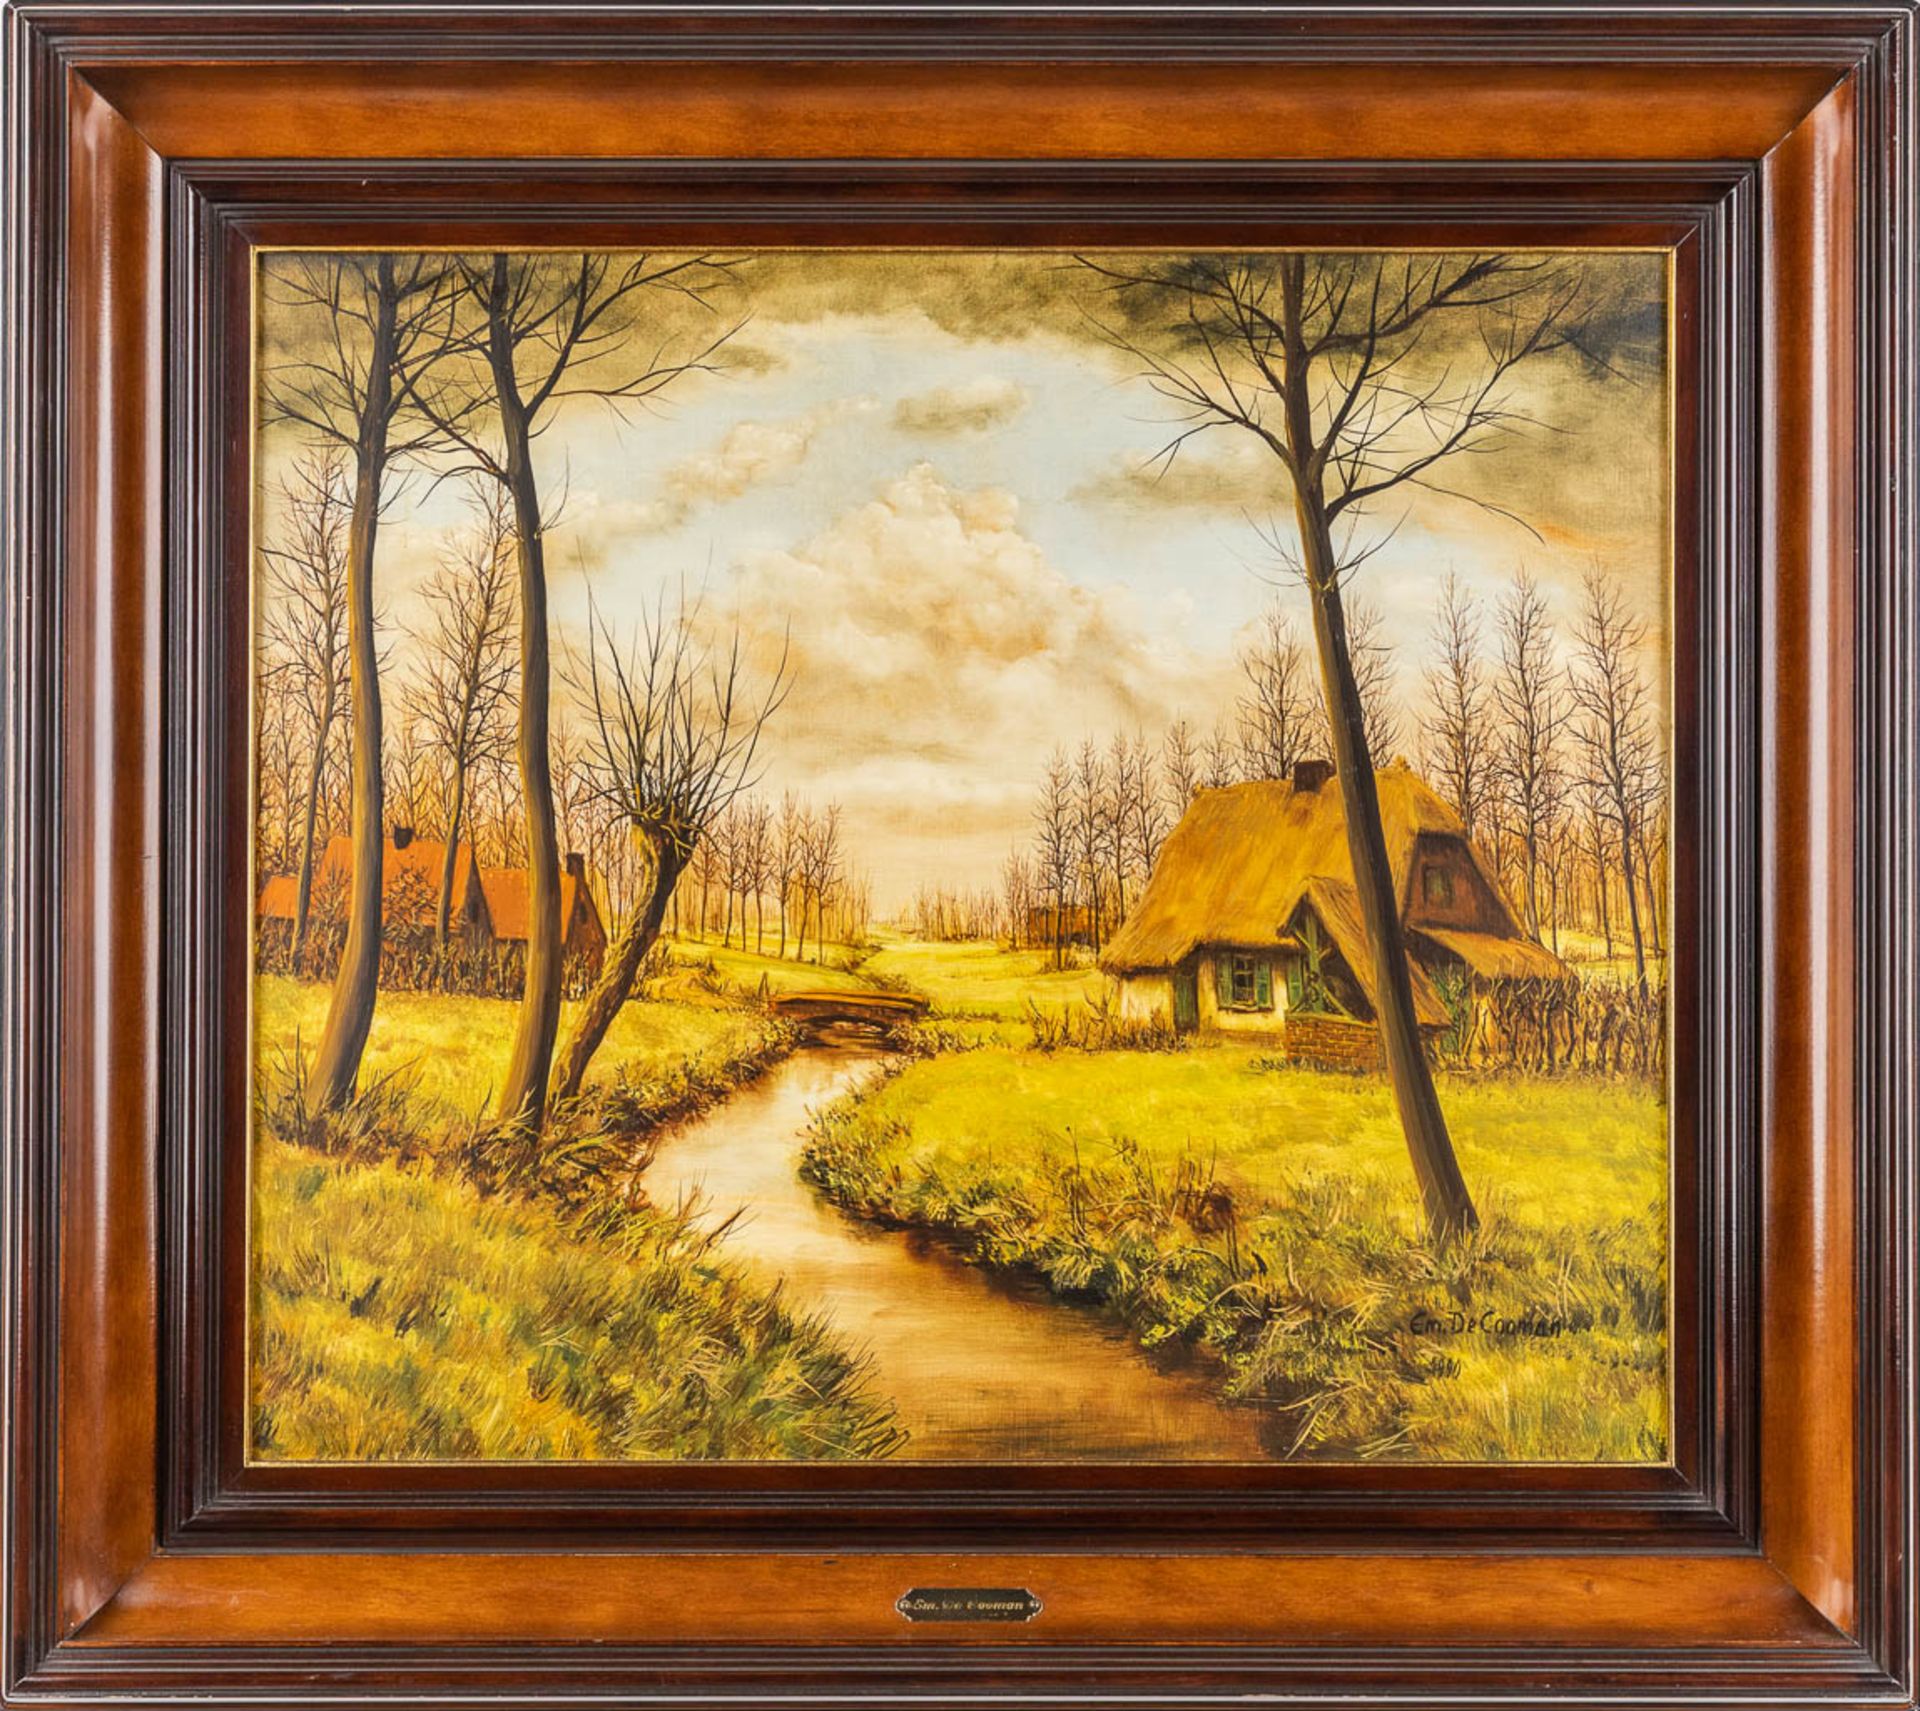 Emiel DE COOMAN (1922) 'Two Landscapes' oil on canvas. (W:70 x H:60 cm) - Image 9 of 15